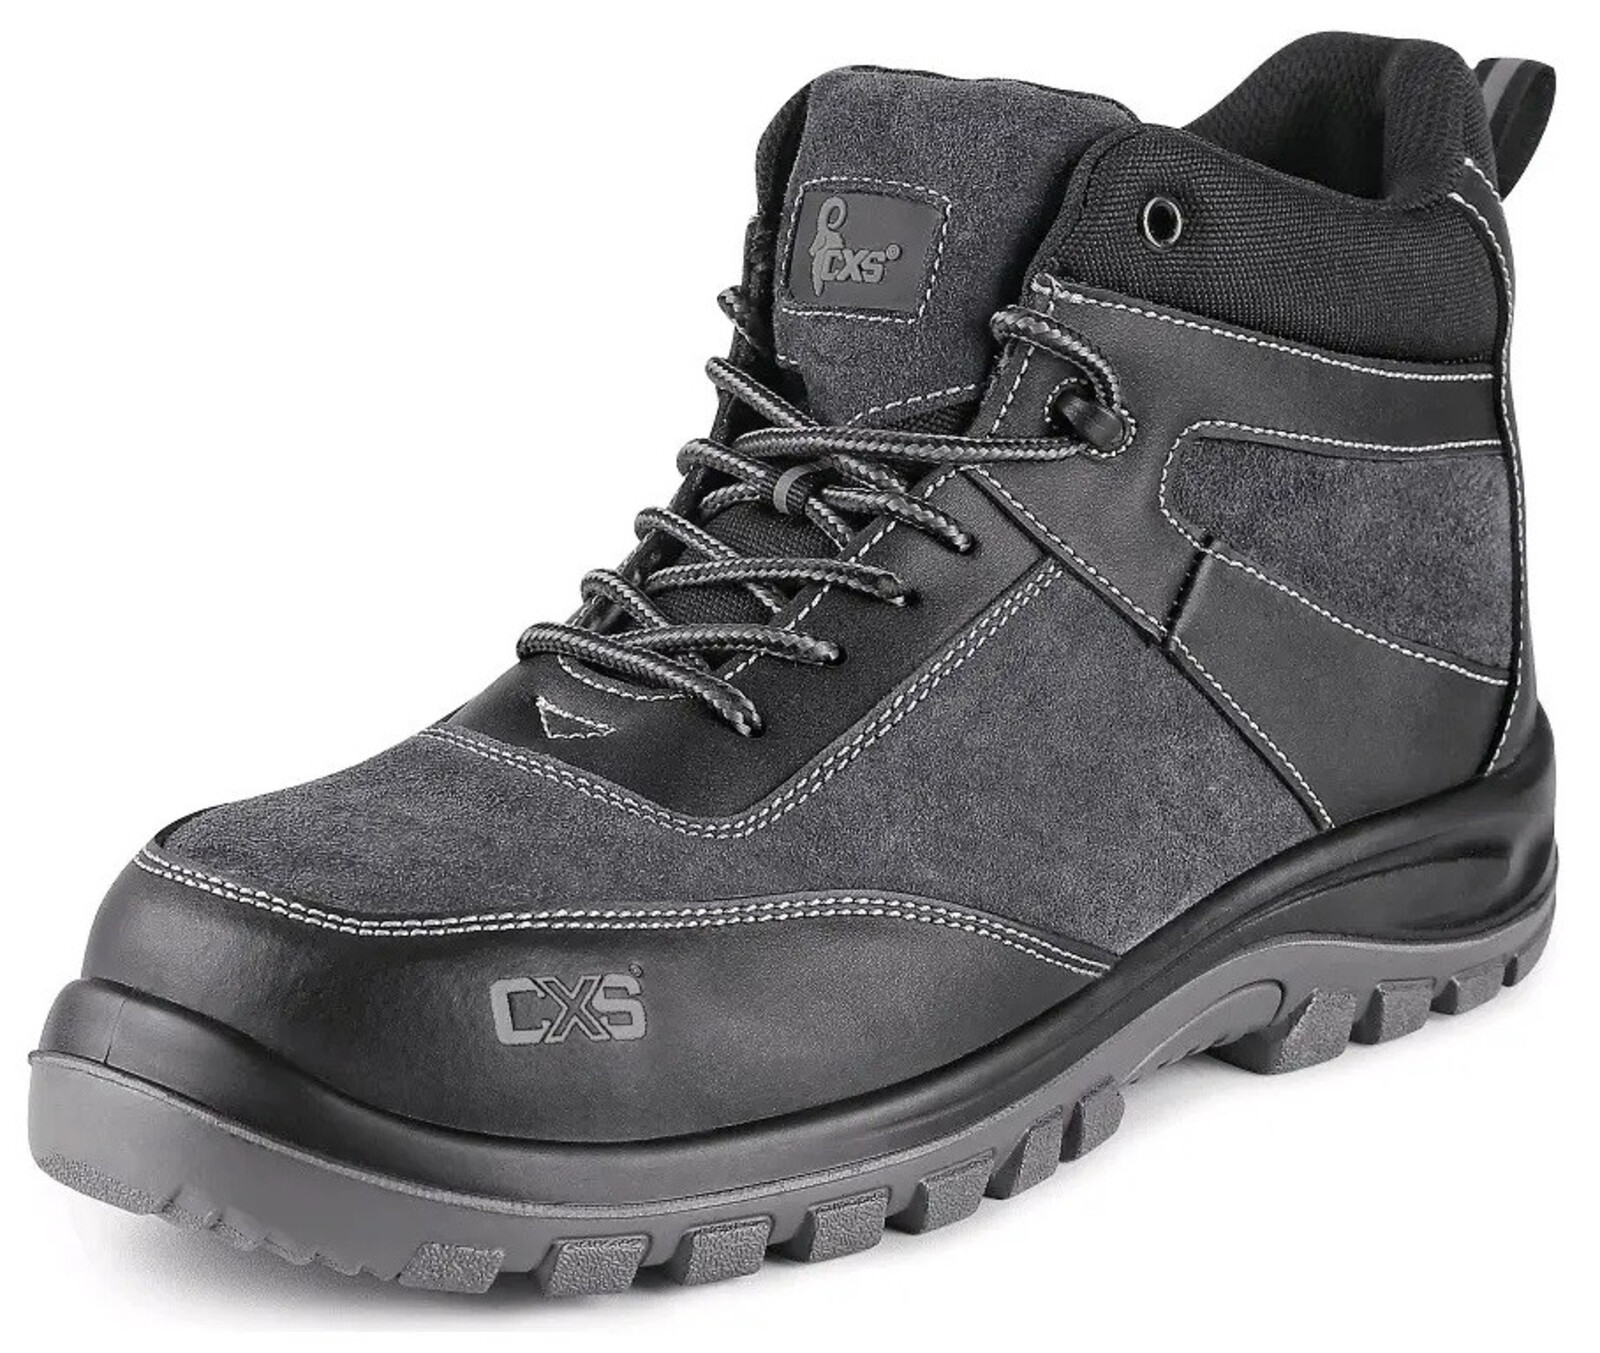 Bezpečnostná členková obuv CXS Profit Top S1P SRC - veľkosť: 43, farba: čierna/sivá